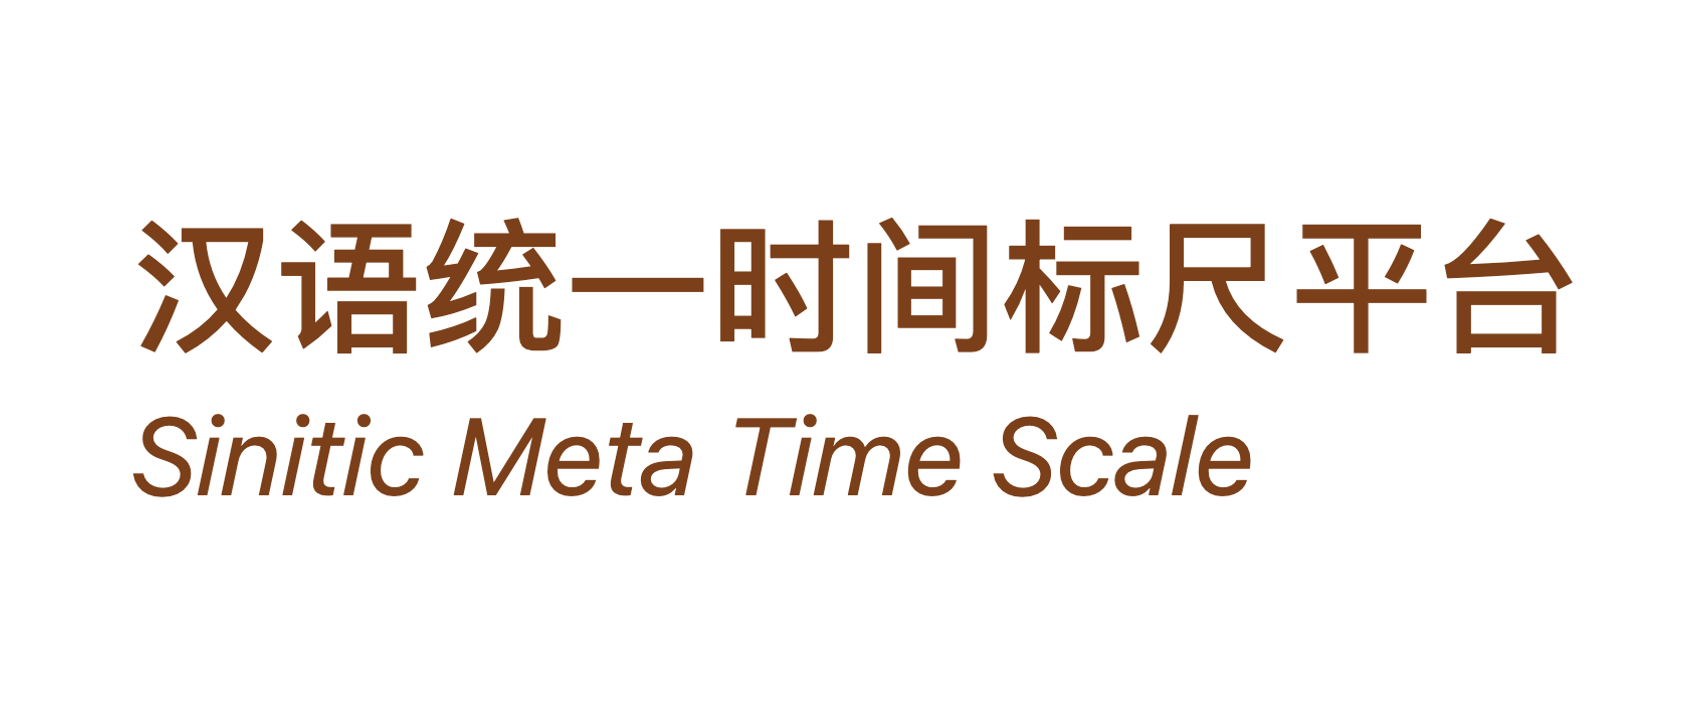 数字人文时间基础设施“汉语统一时间标尺平台”使用指南